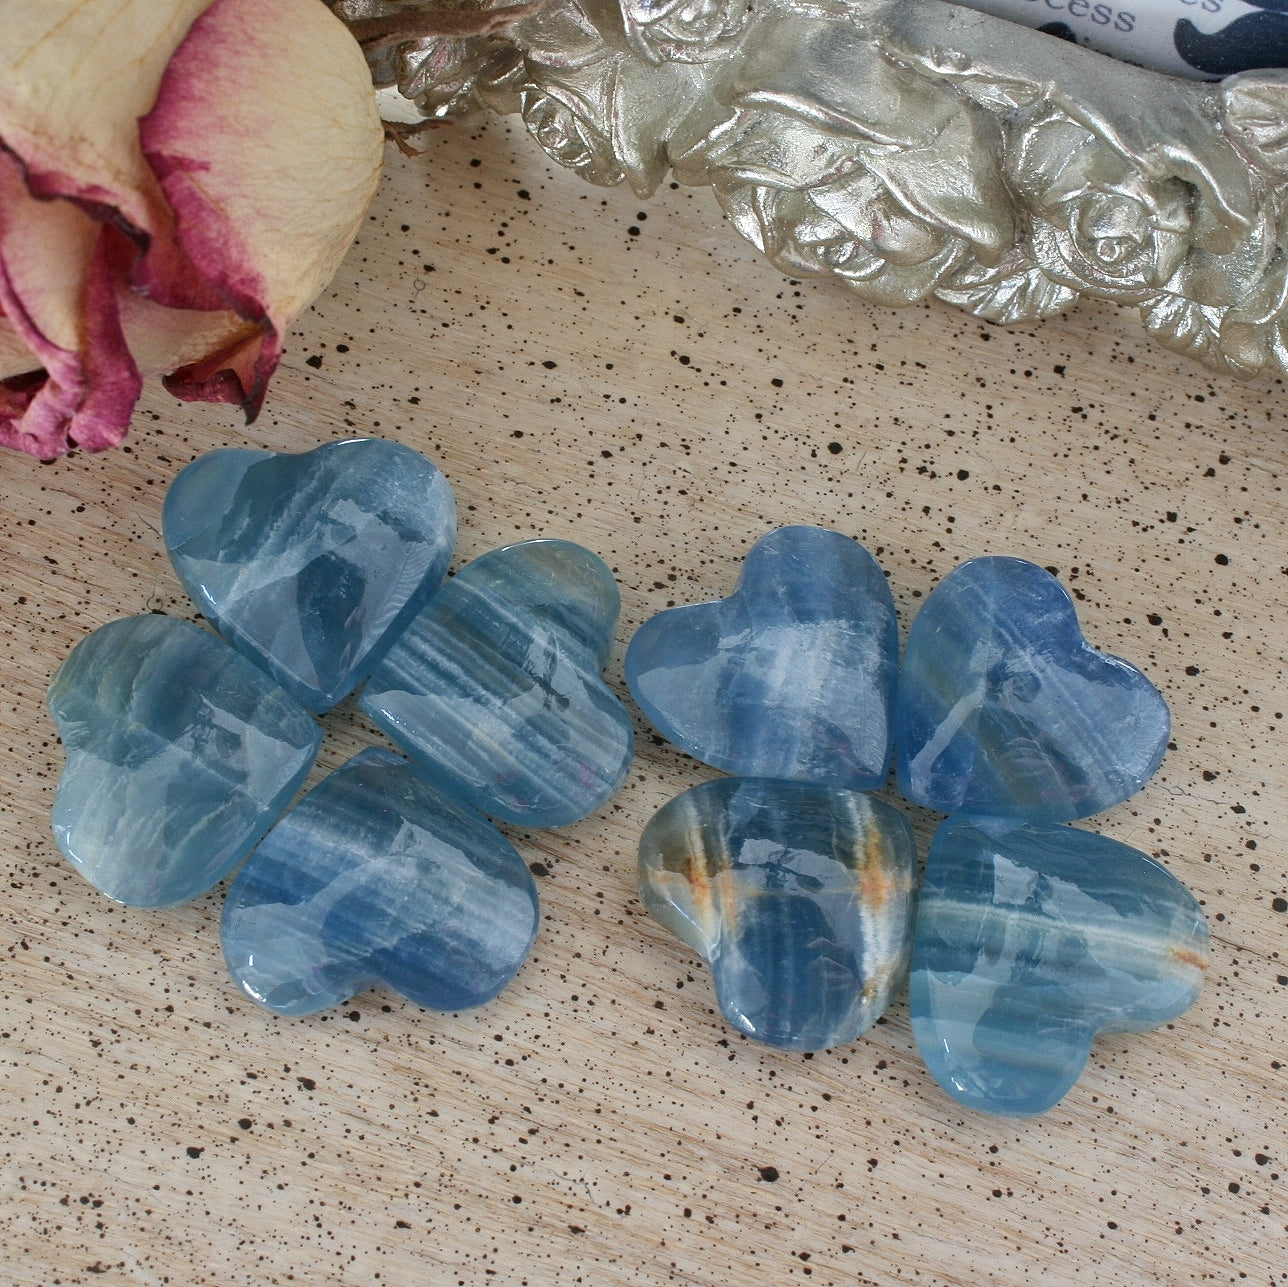 Blue Calcite Hearts, Natural Gemstones Hearts, Healing Crystals Hearts –